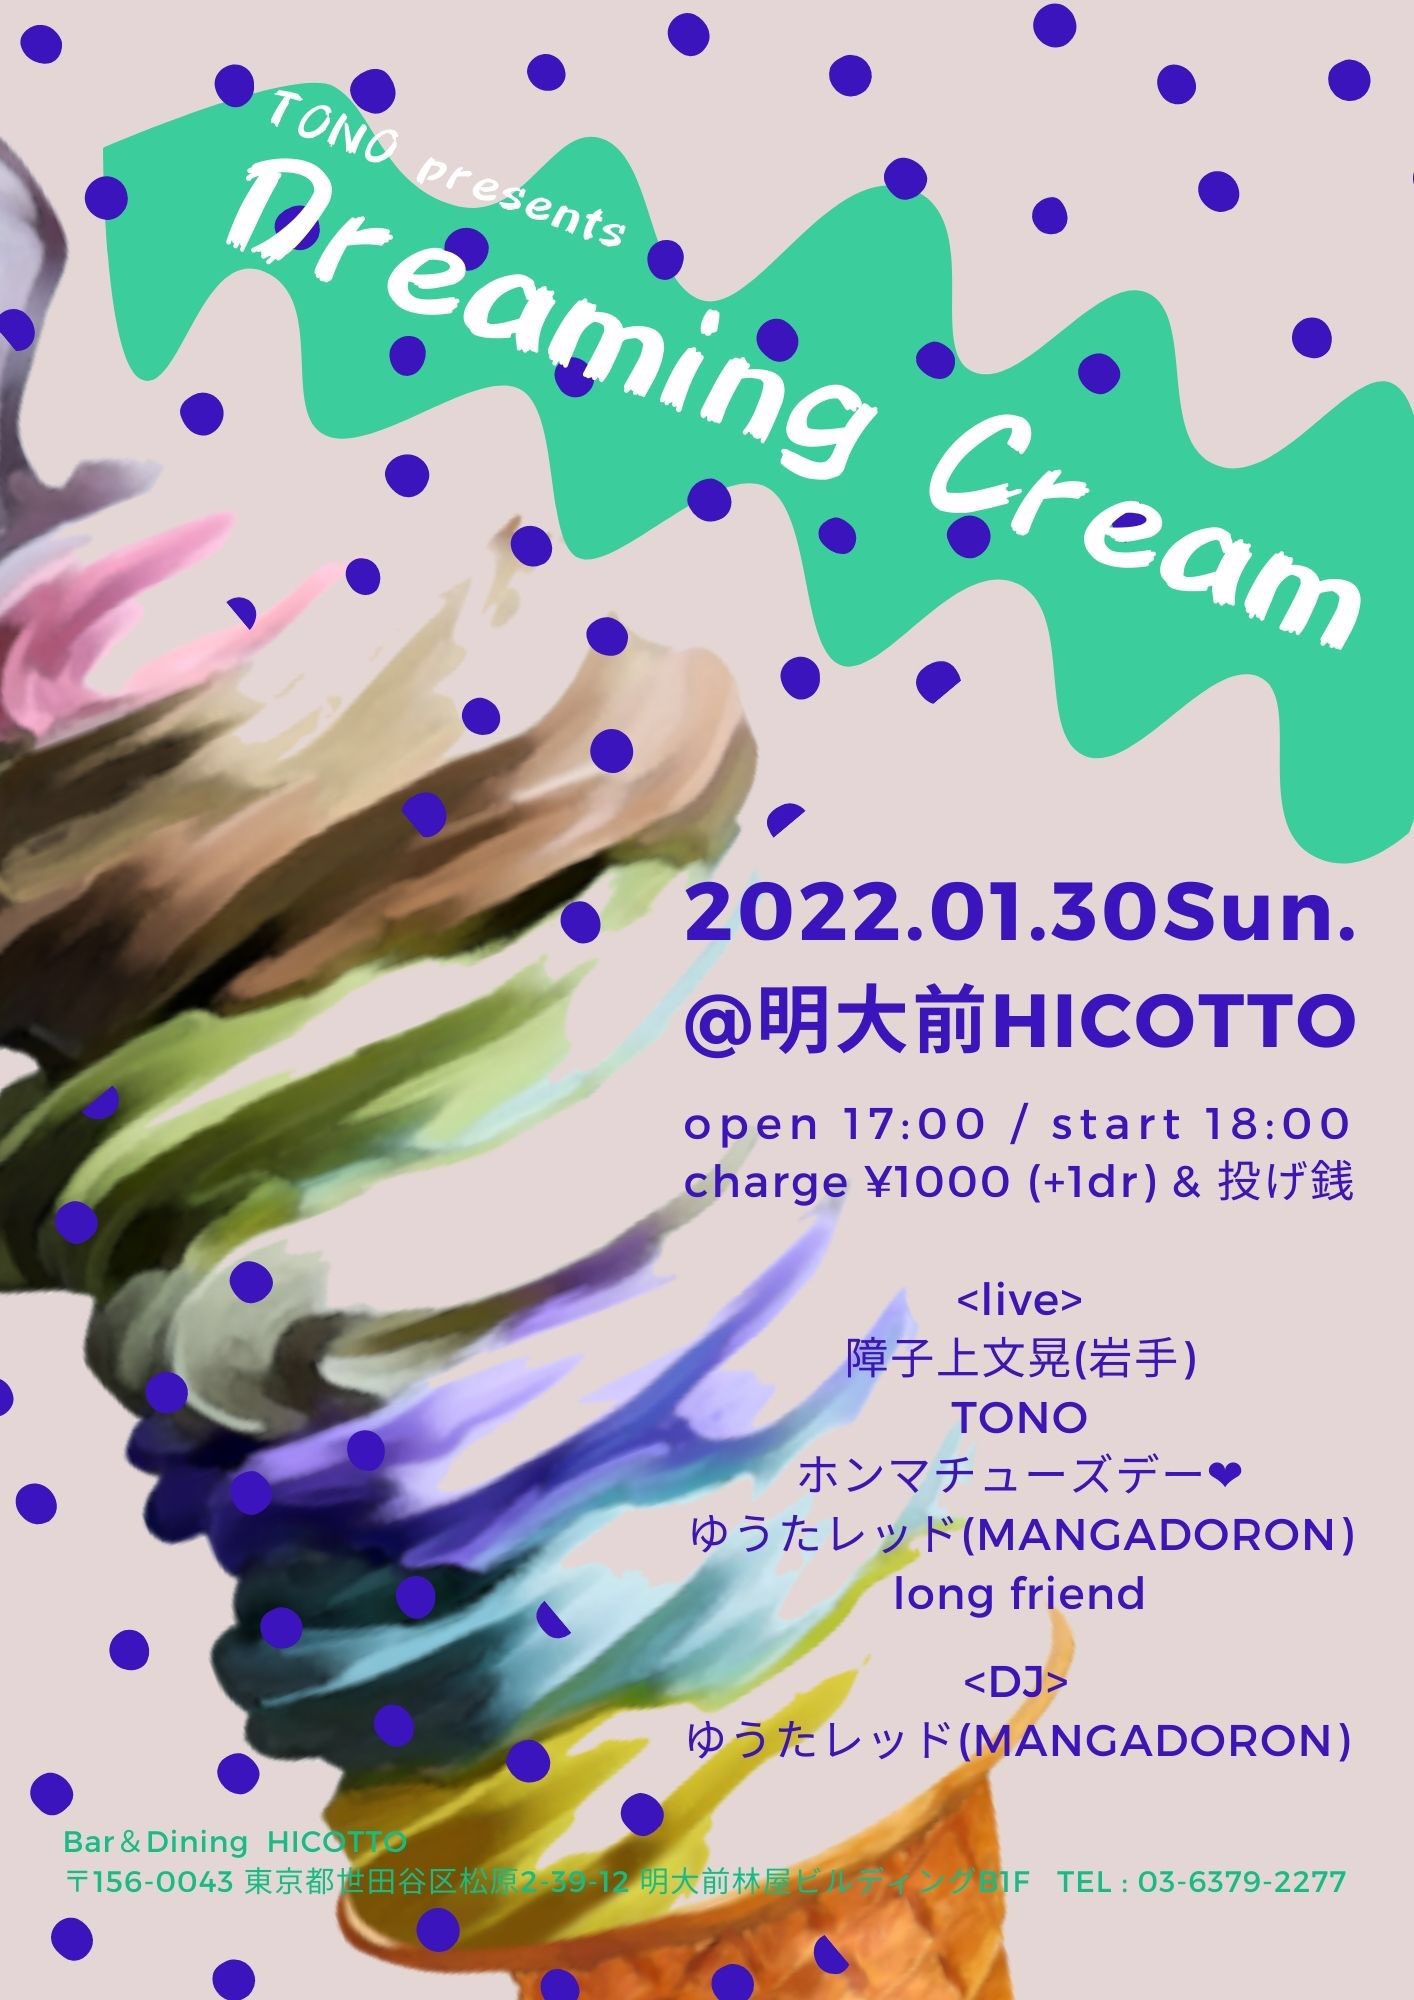 開催延期 [ゆうたレッド弾き語り] 1/30 日 TONOpresents「Dreaming Cream」 明大前 HICOTTO